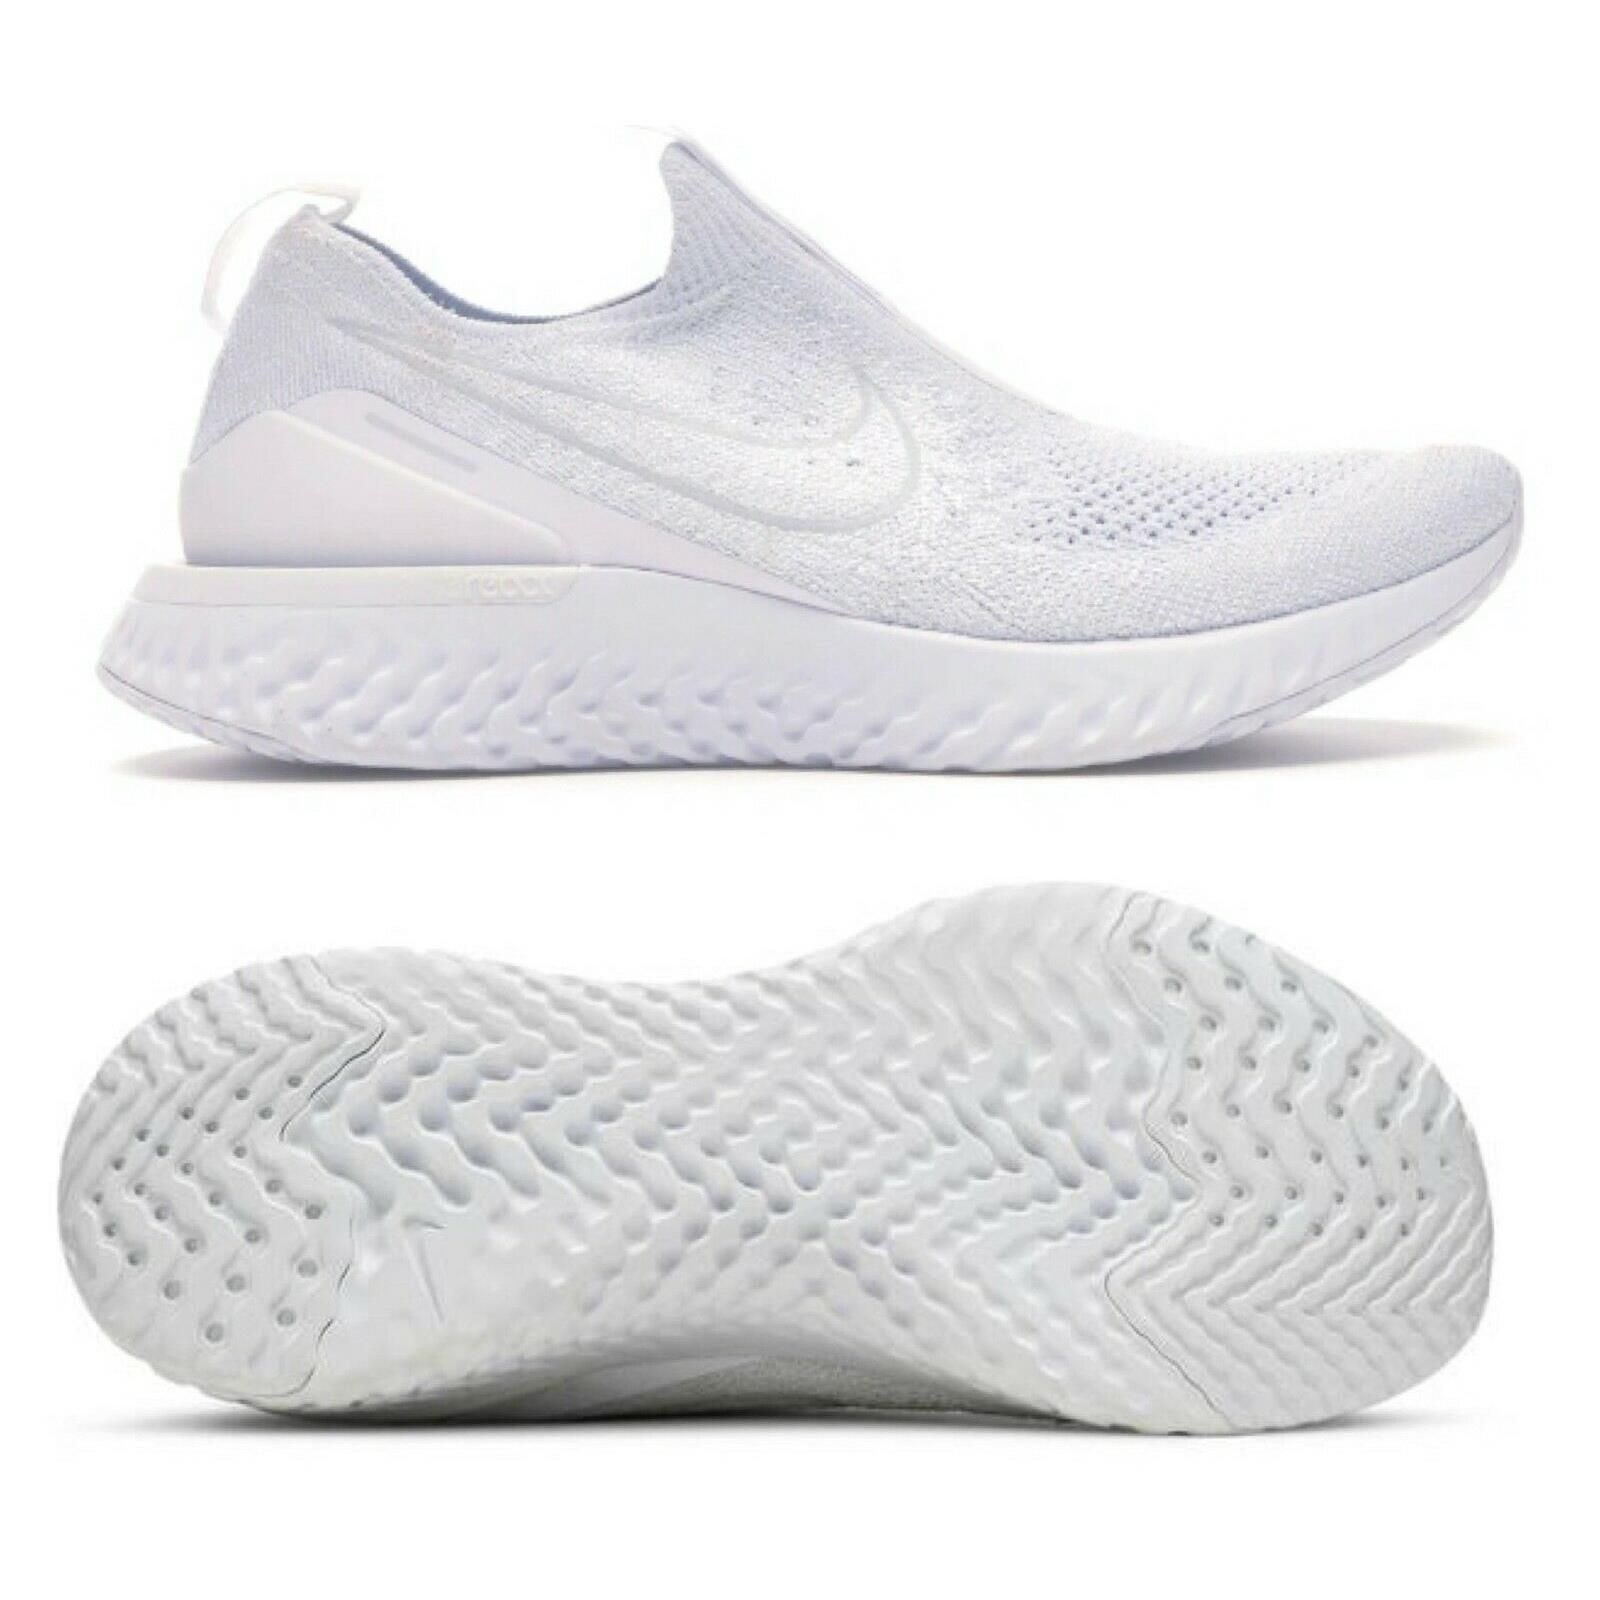 Nike Epic Phantom React FK Slip-on White Running Shoes BV0415 100 Women Size 7.5